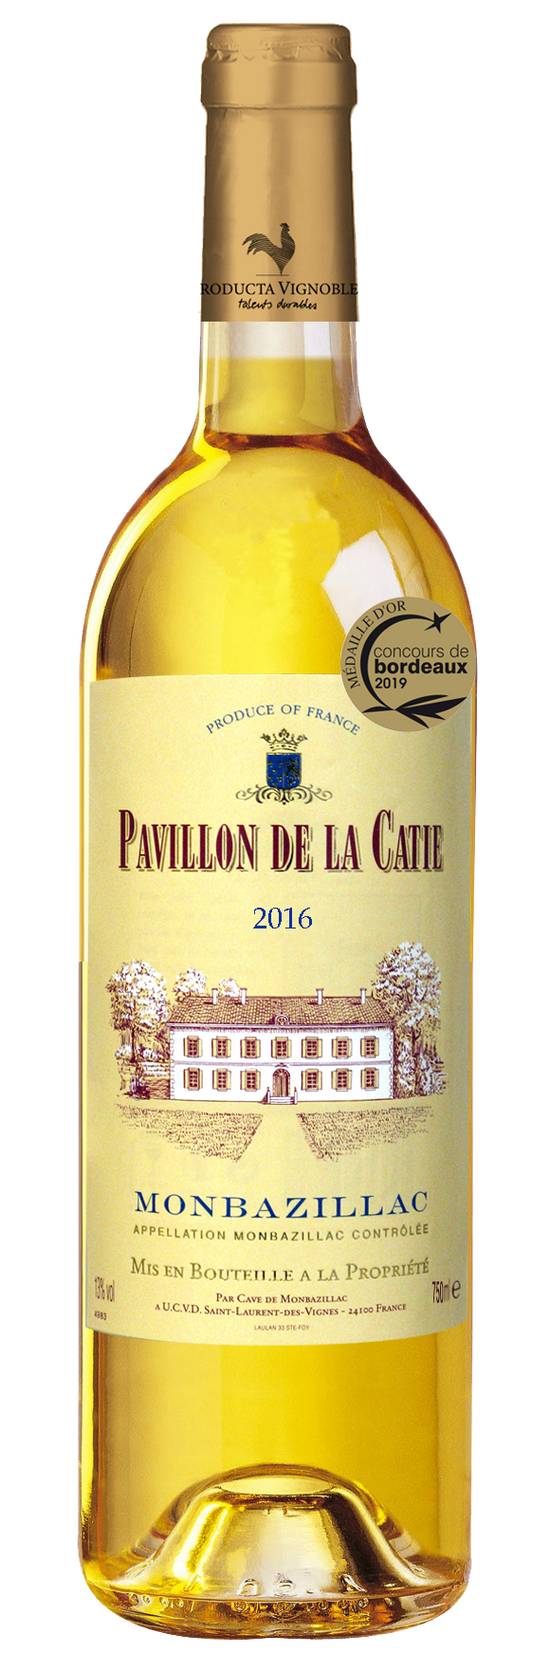 Pavillon de La Catie - Vin doux monbazillac 2016 (750 ml)